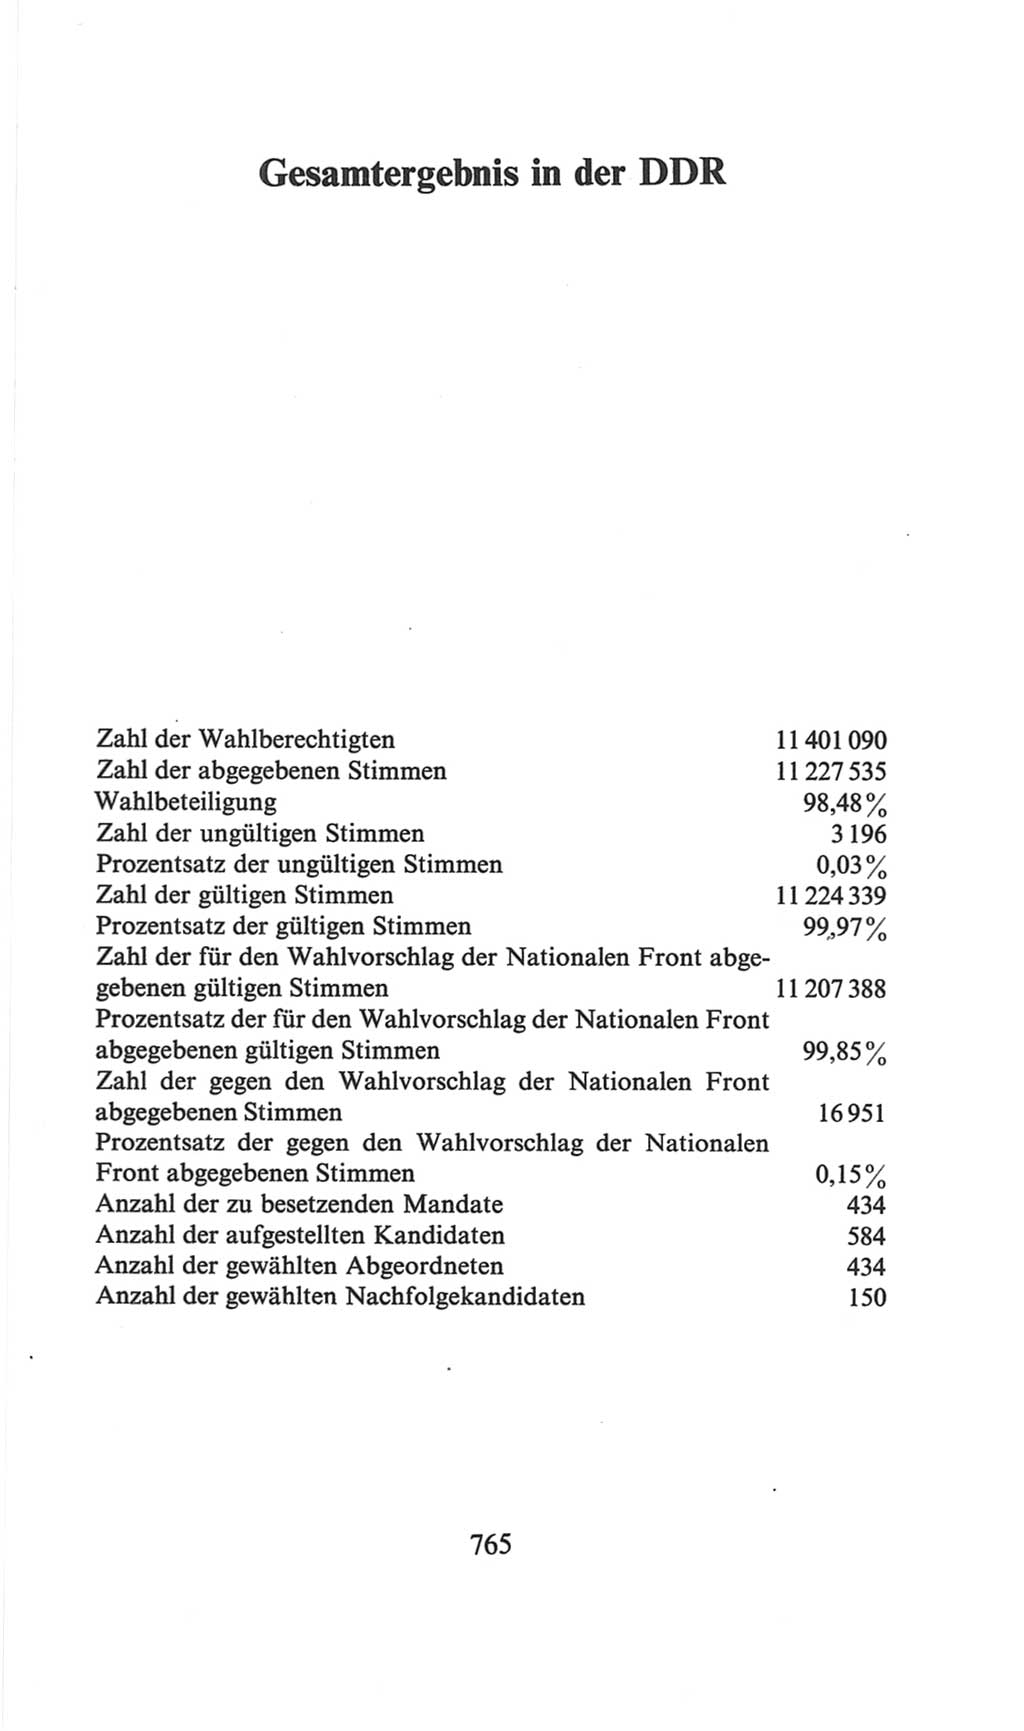 Volkskammer (VK) der Deutschen Demokratischen Republik (DDR), 6. Wahlperiode 1971-1976, Seite 765 (VK. DDR 6. WP. 1971-1976, S. 765)